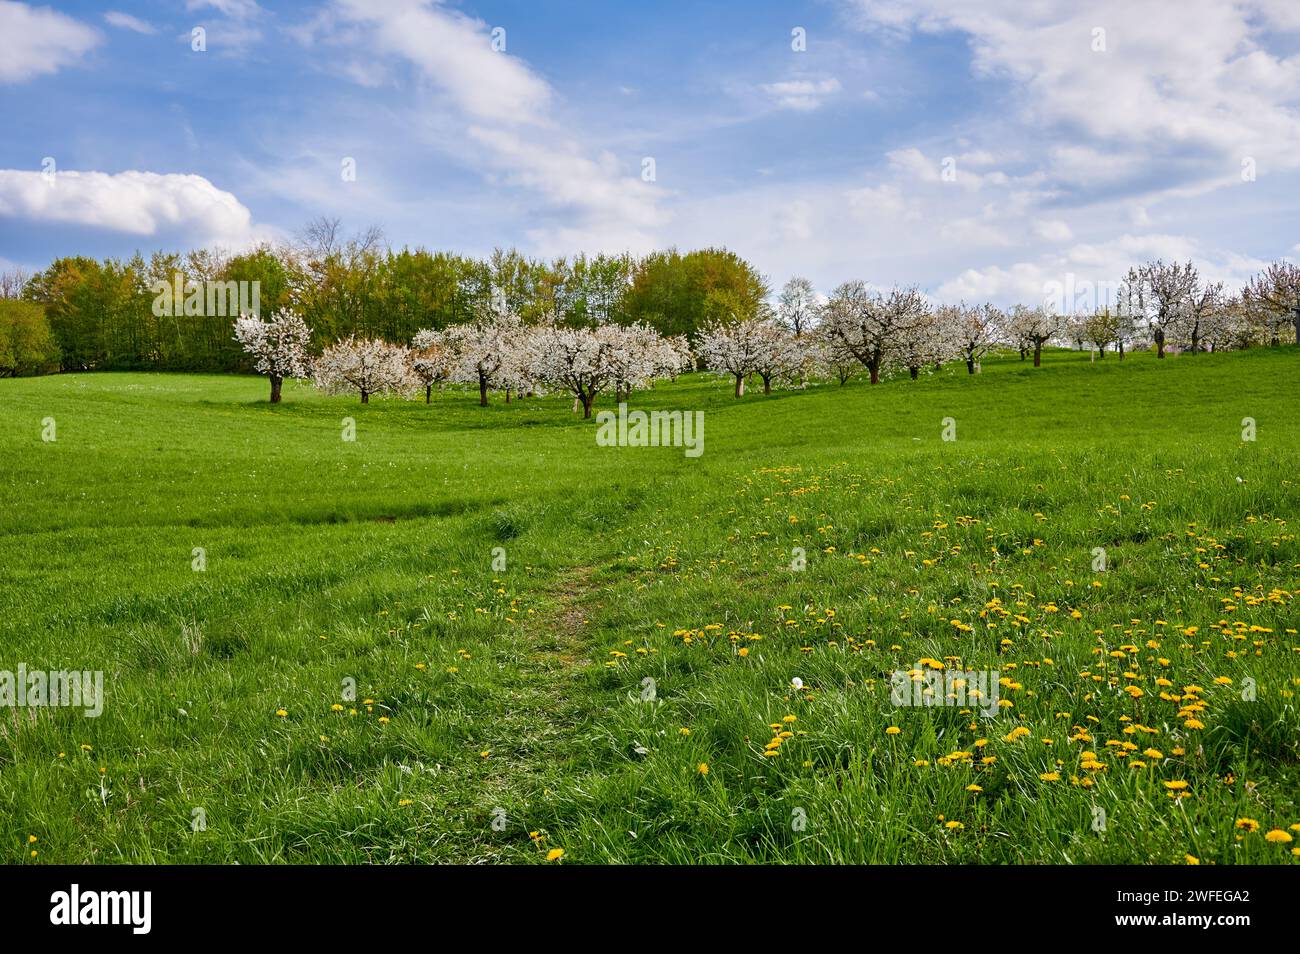 Prato verde con ciliegi in fiore nella Svizzera franconica, Germania, vicino a Kalchreuth/Norimberga, Germania Foto Stock